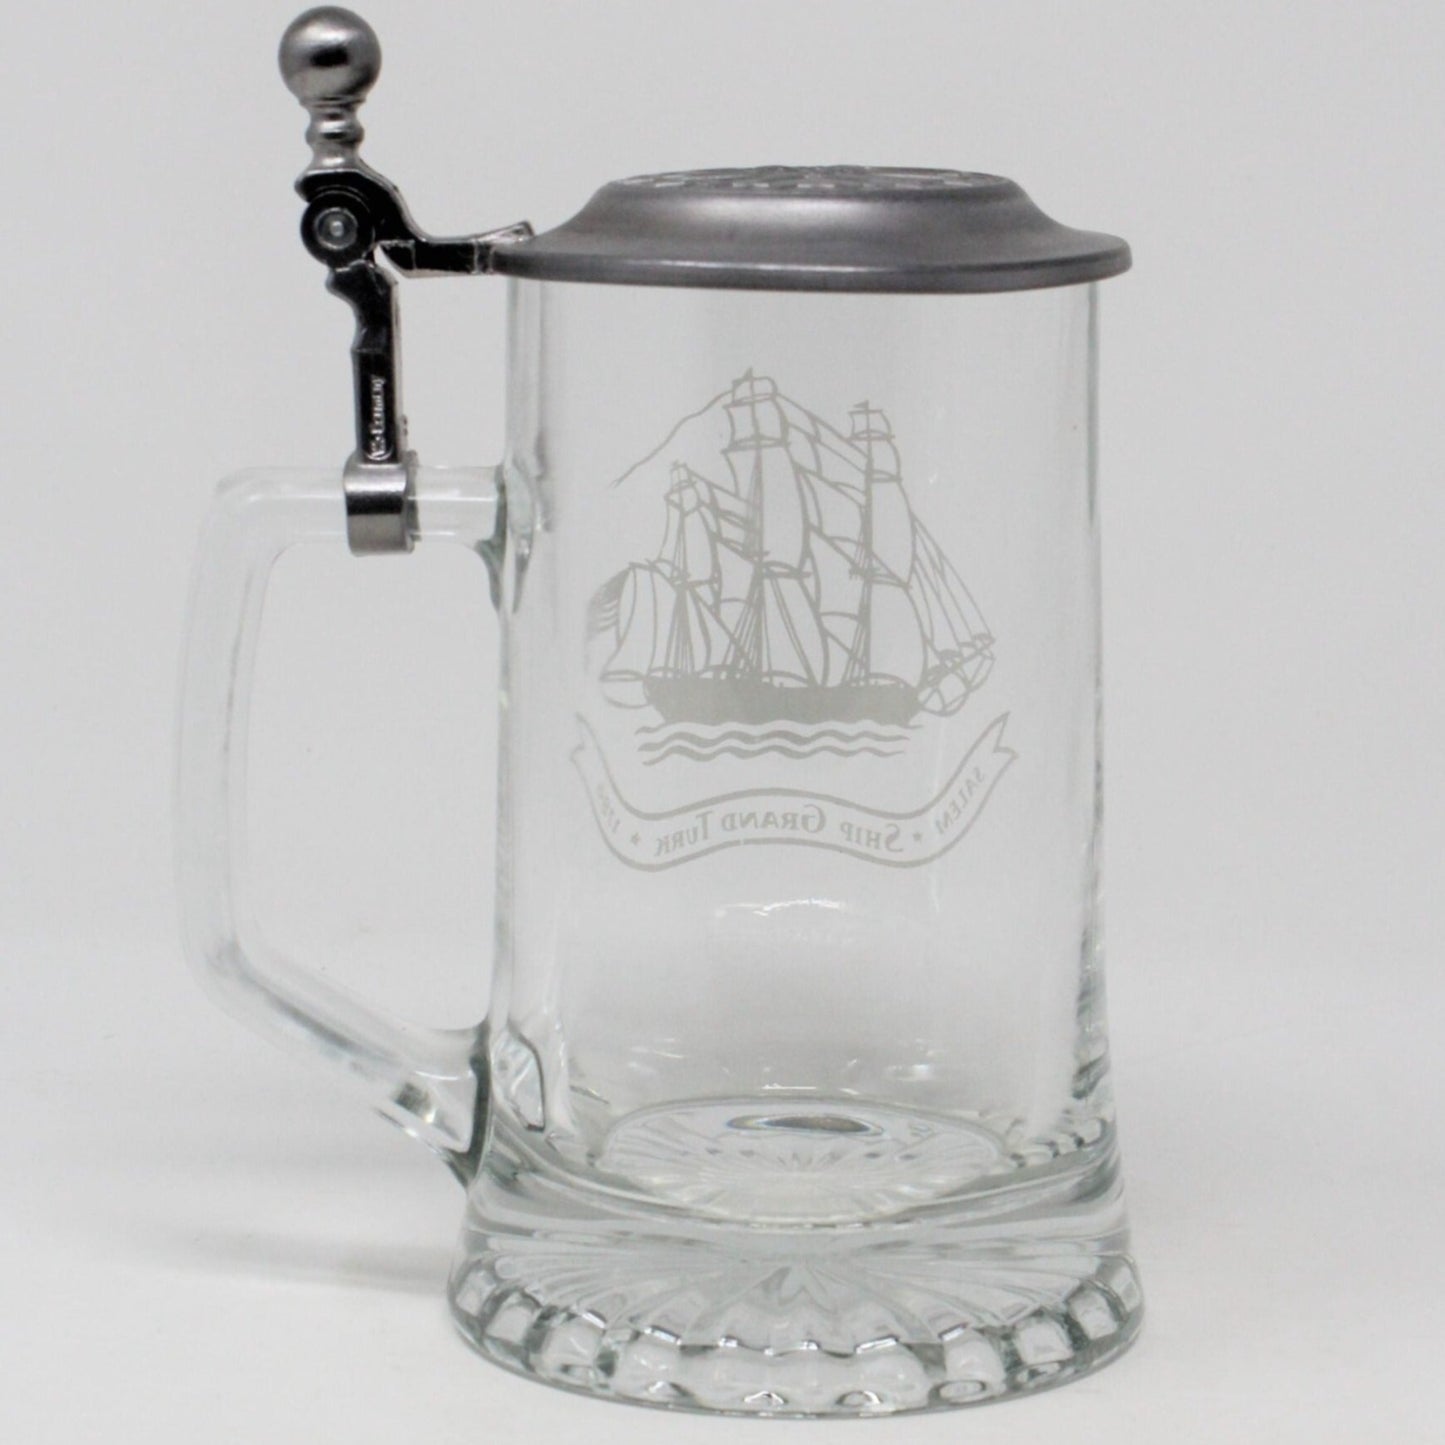 Beer Stein, Old Spice, Salem Ship Grand Turk 1786, Germany, Vintage